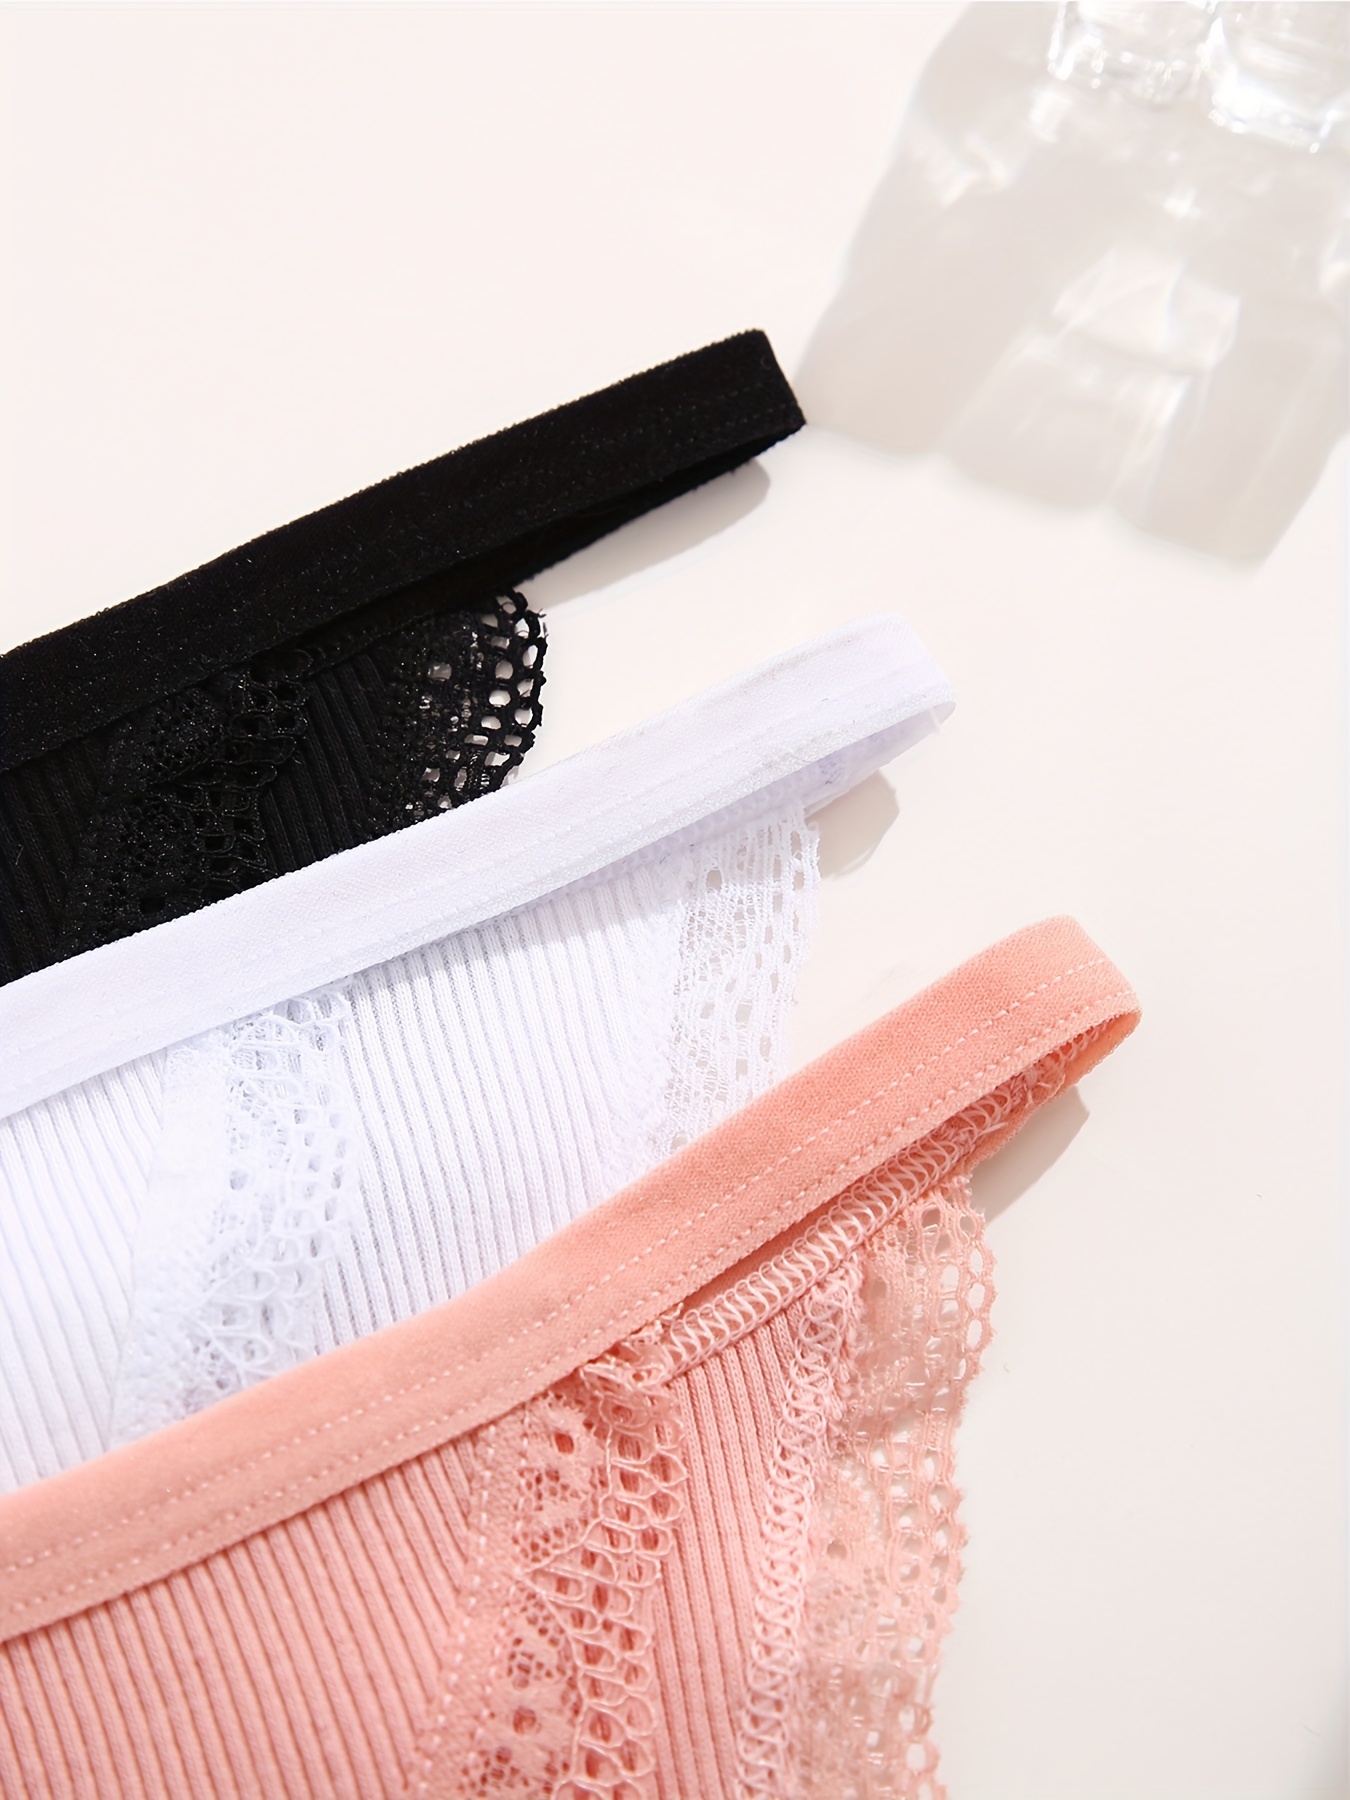 3pcs Contrast Lace Briefs, Soft & Comfy Scallop Trim Ribbed Panties,  Women's Lingerie & Underwear